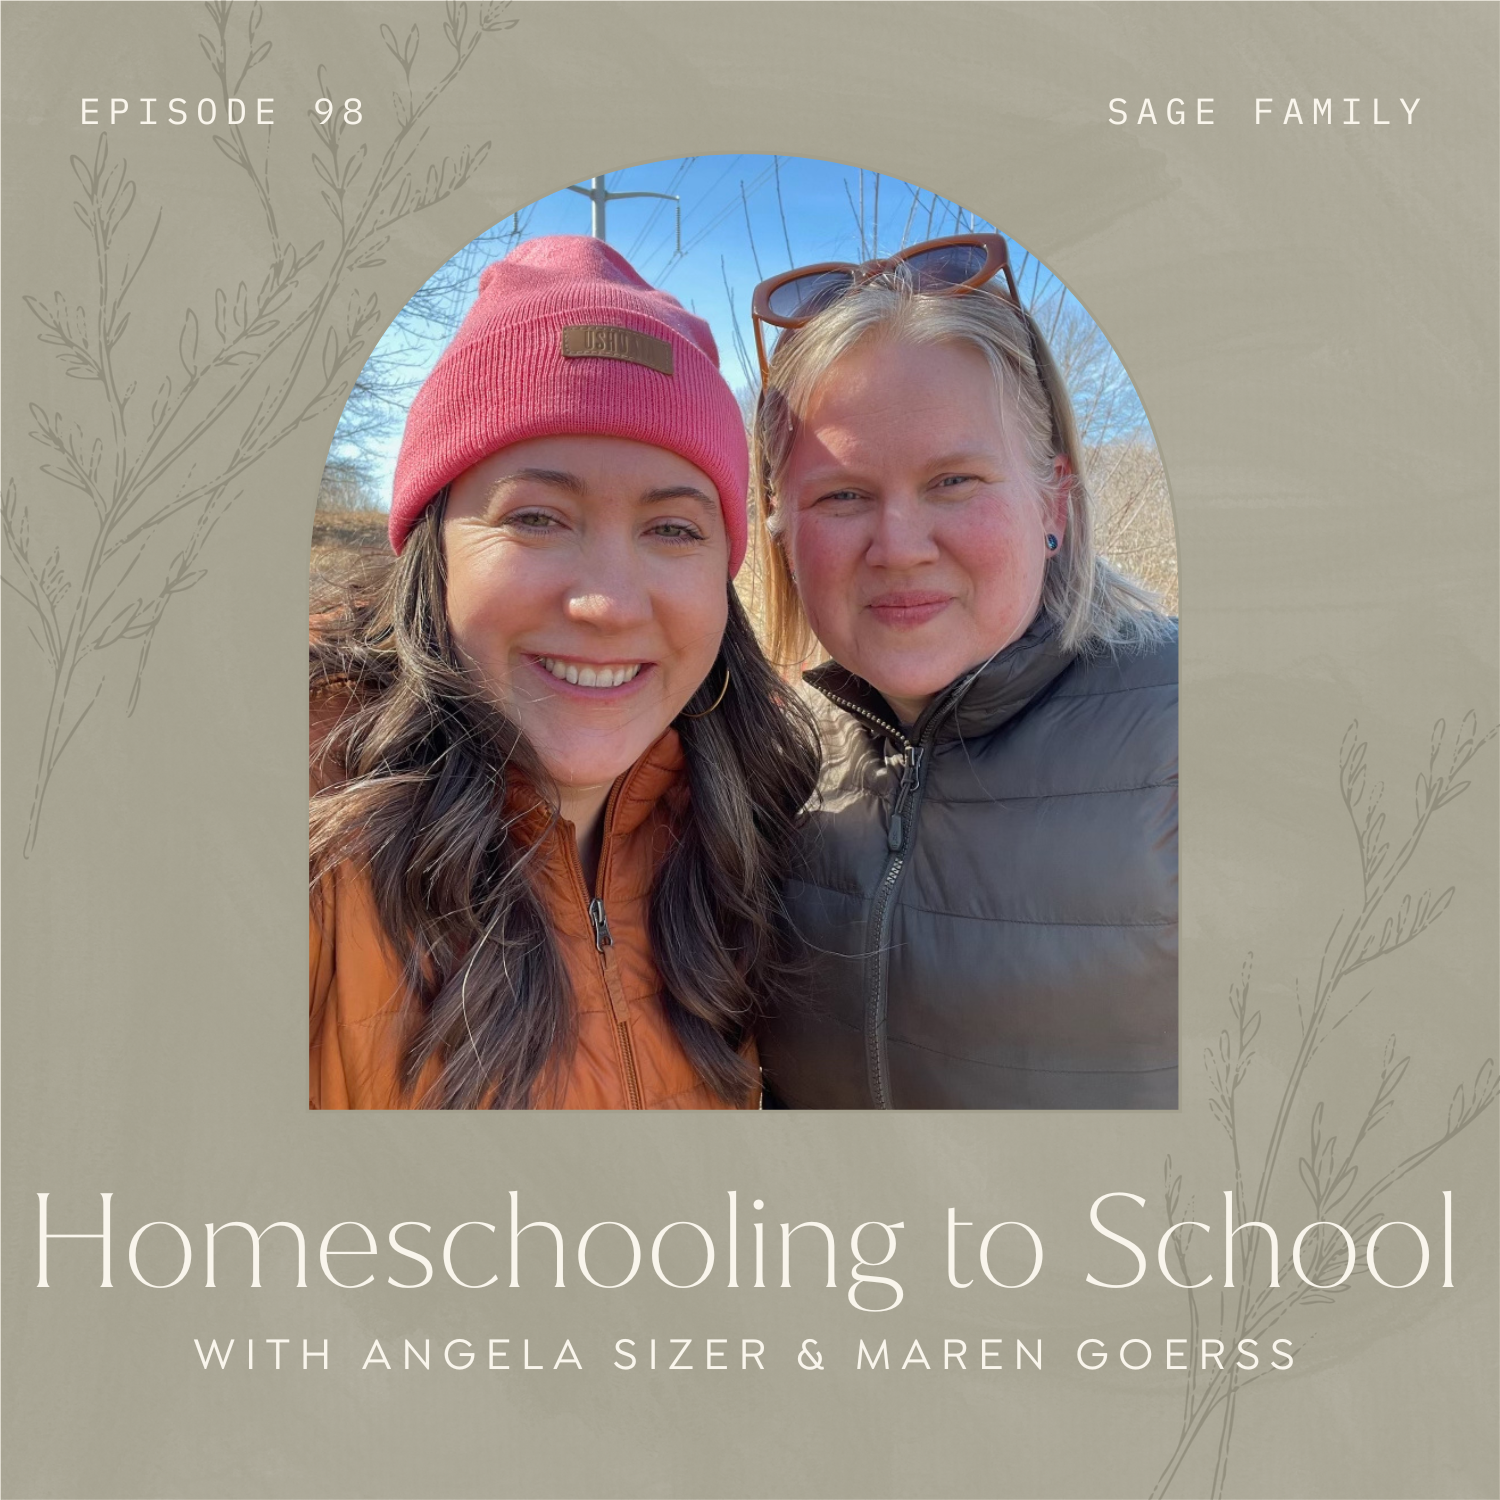 Homeschooling to School with Angela Sizer & Maren Goerss